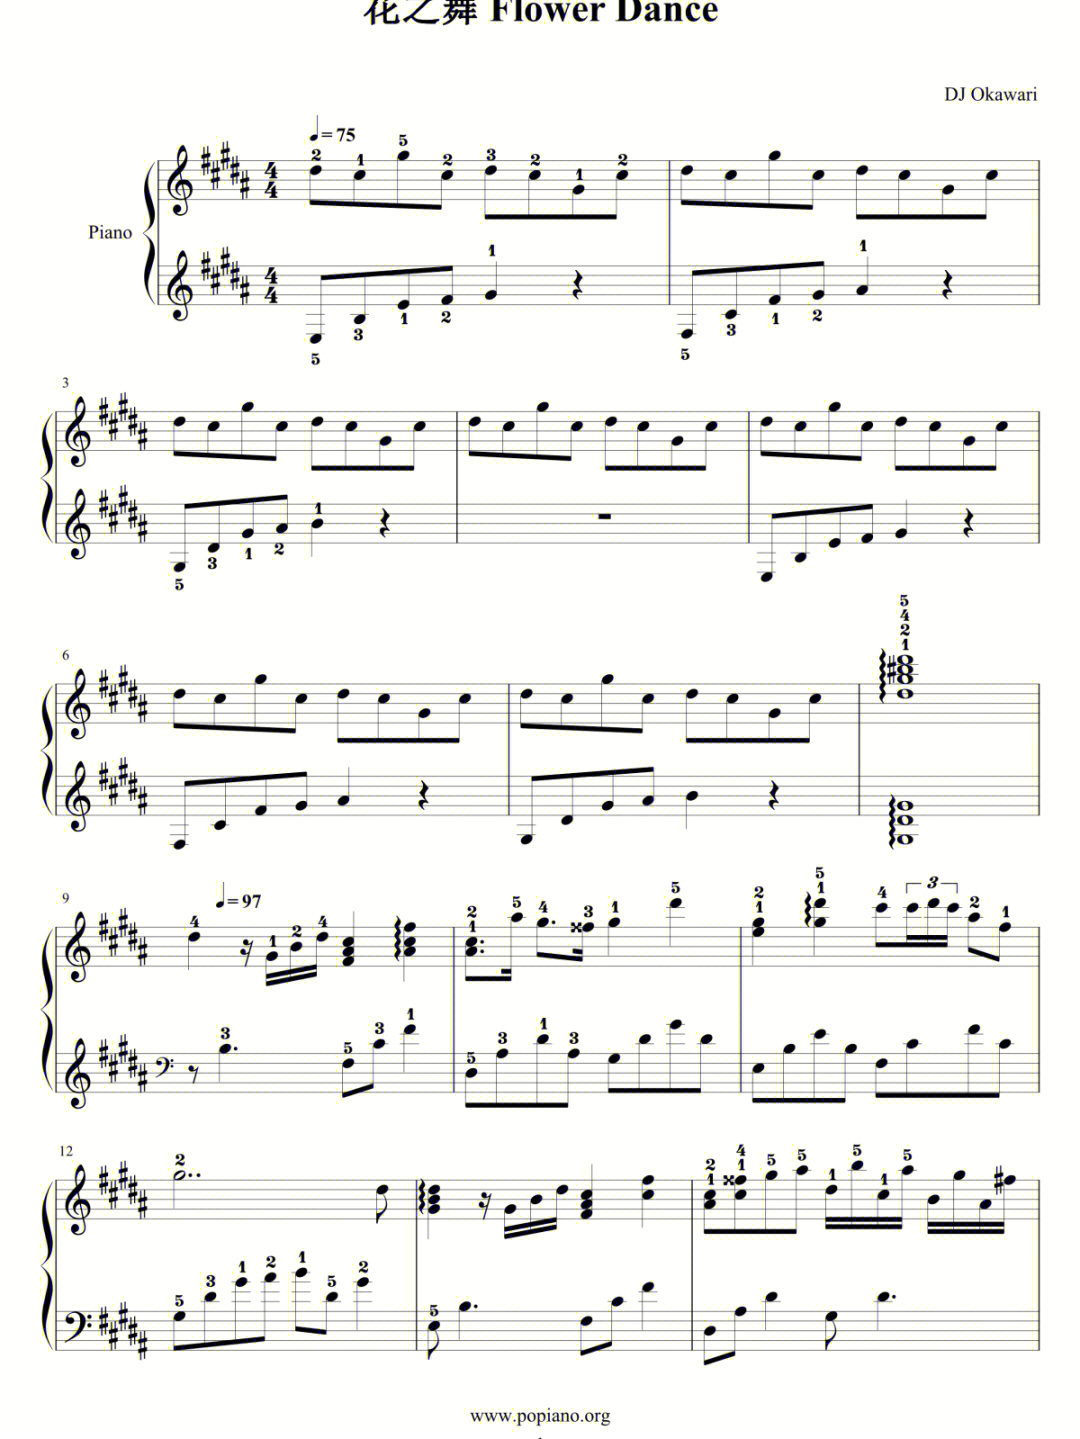 花之舞钢琴谱(无删减)带指法版